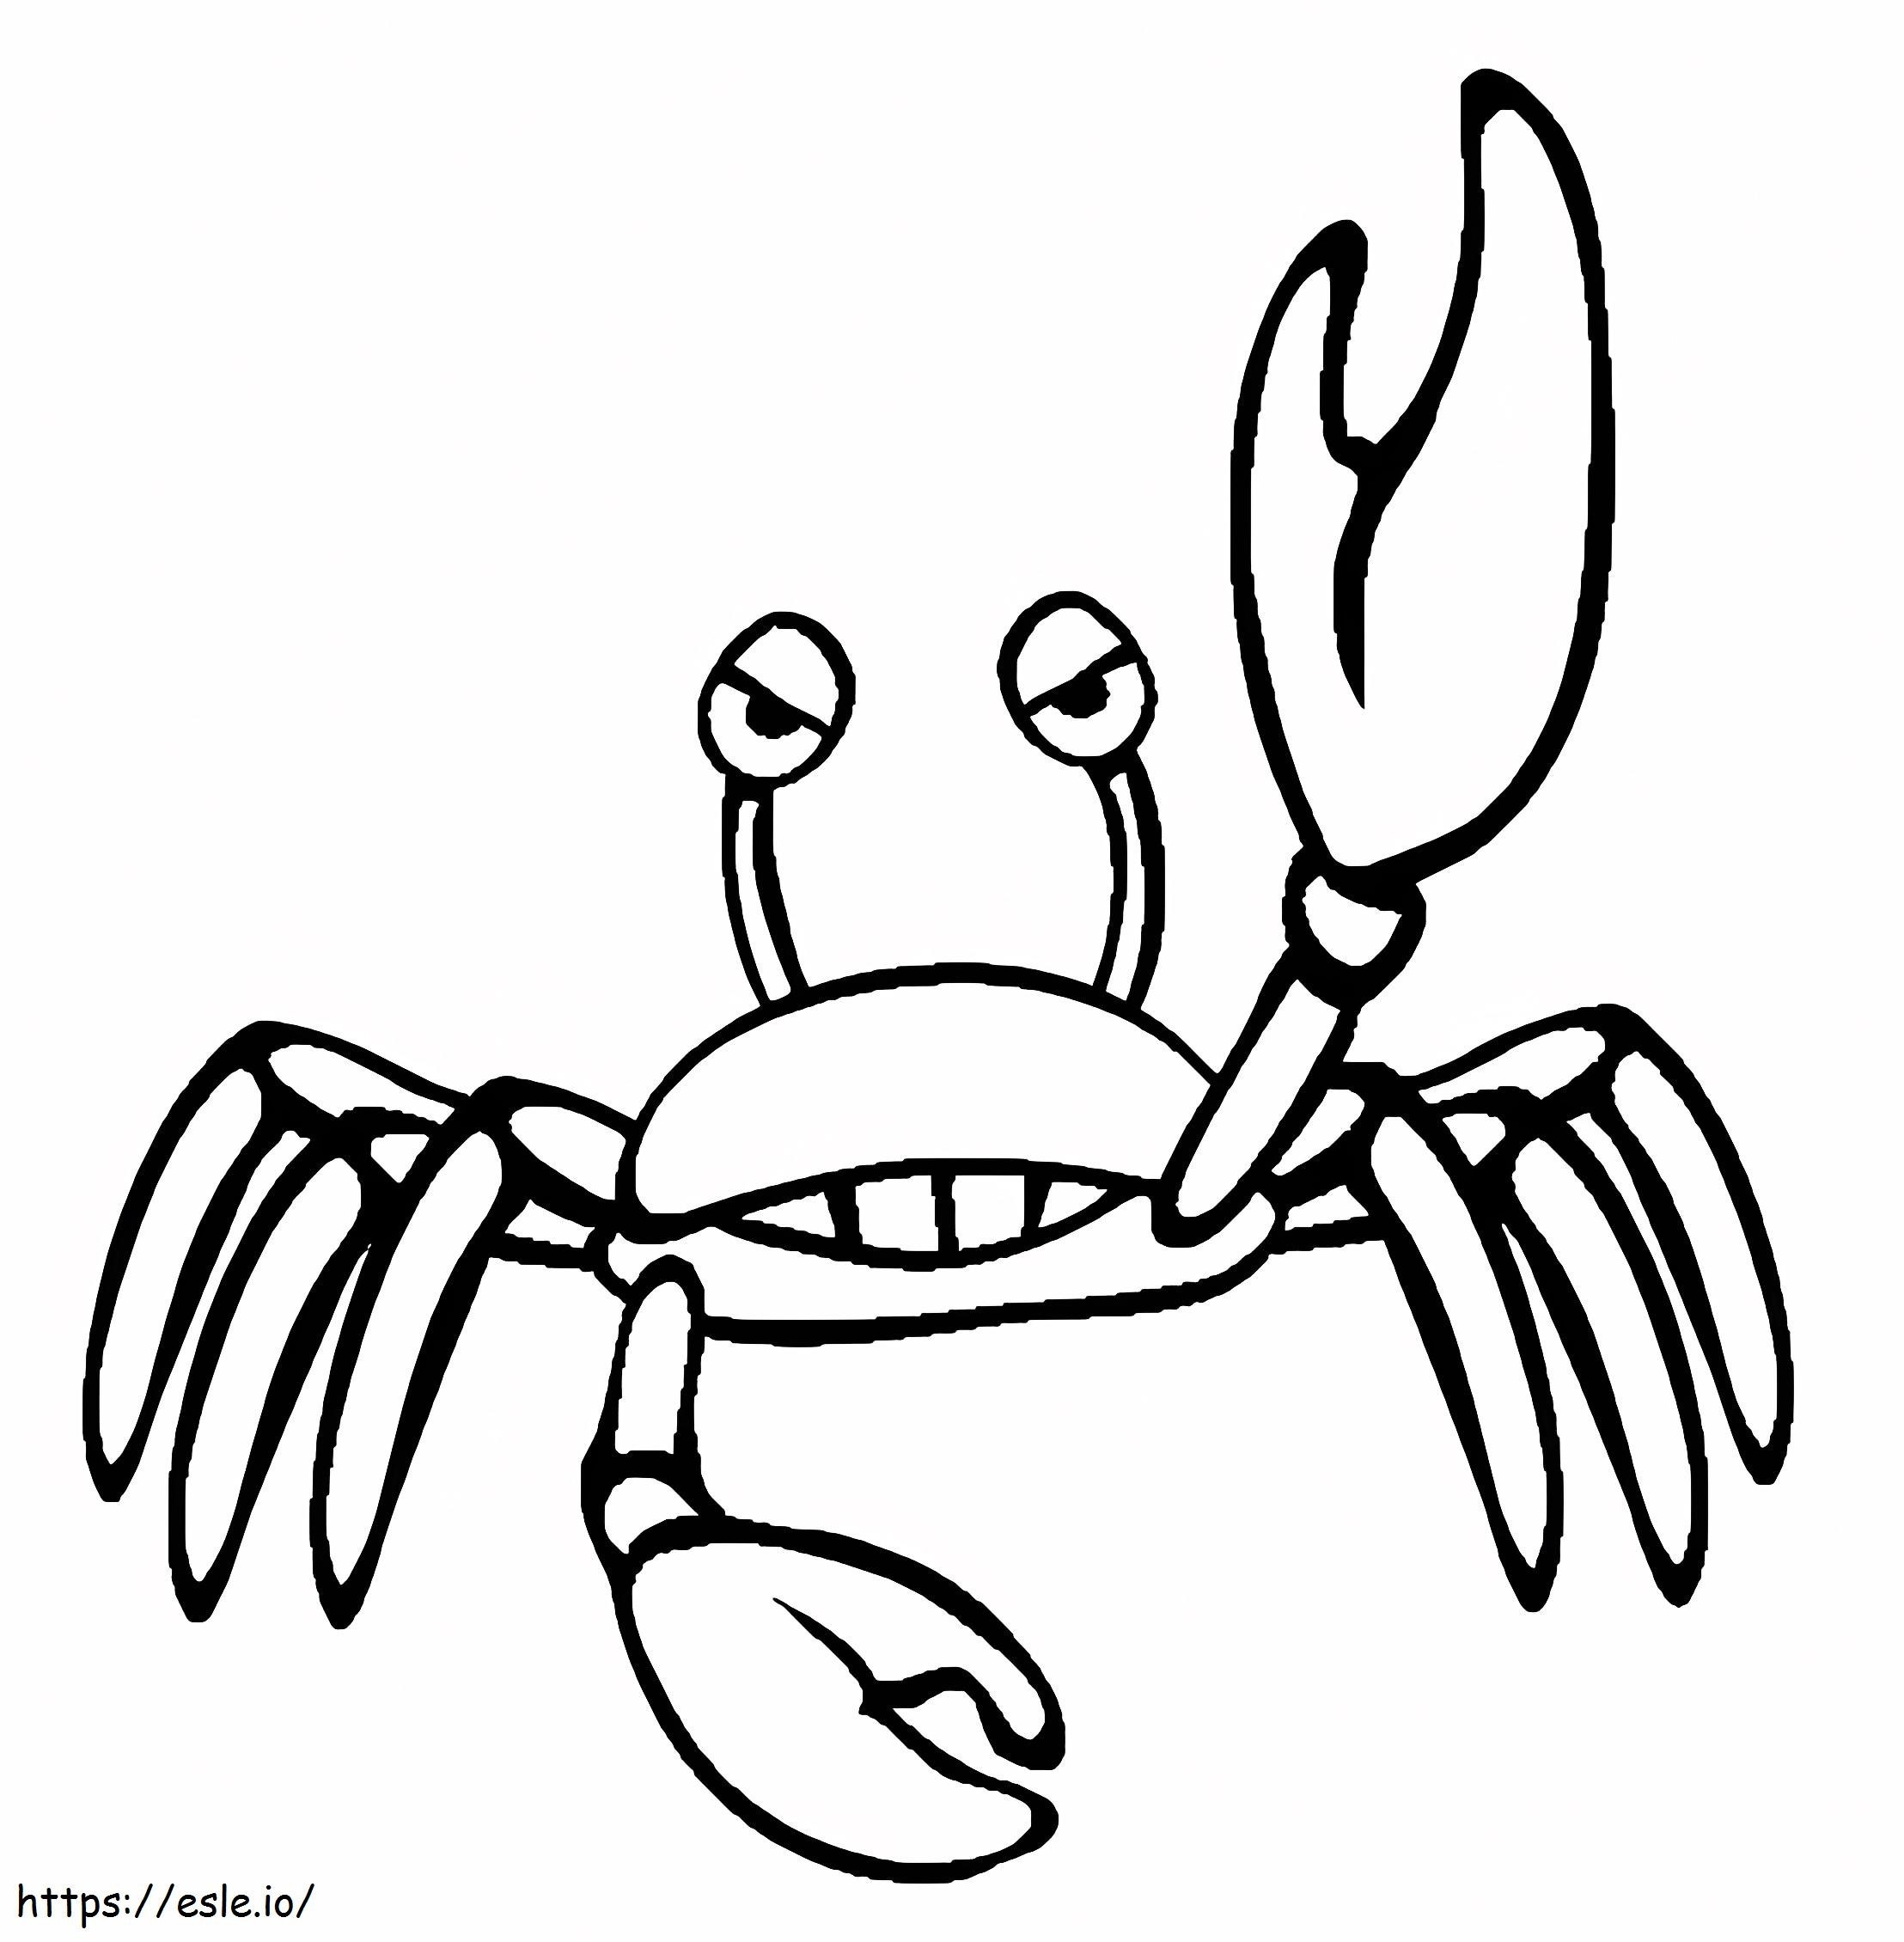 Wütende Krabbe ausmalbilder